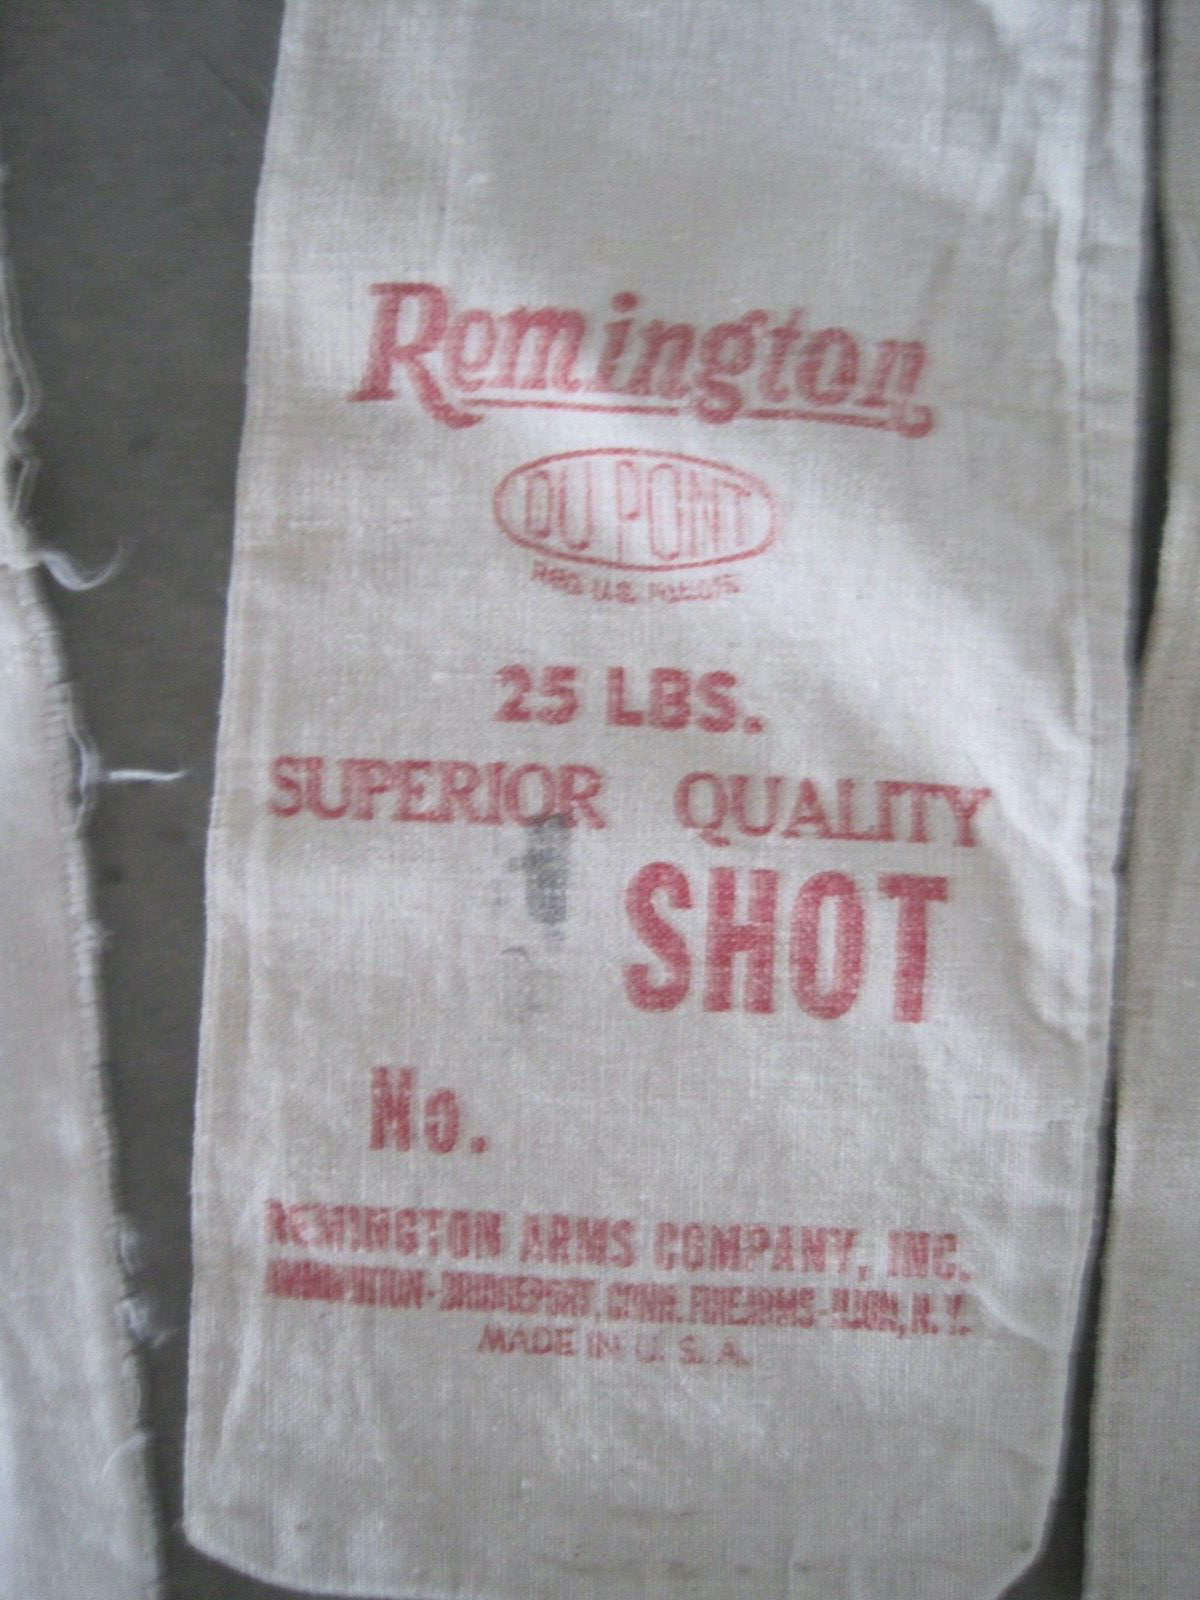 Remington Shot Bag Chiller Shot Bag Sewn Together Other